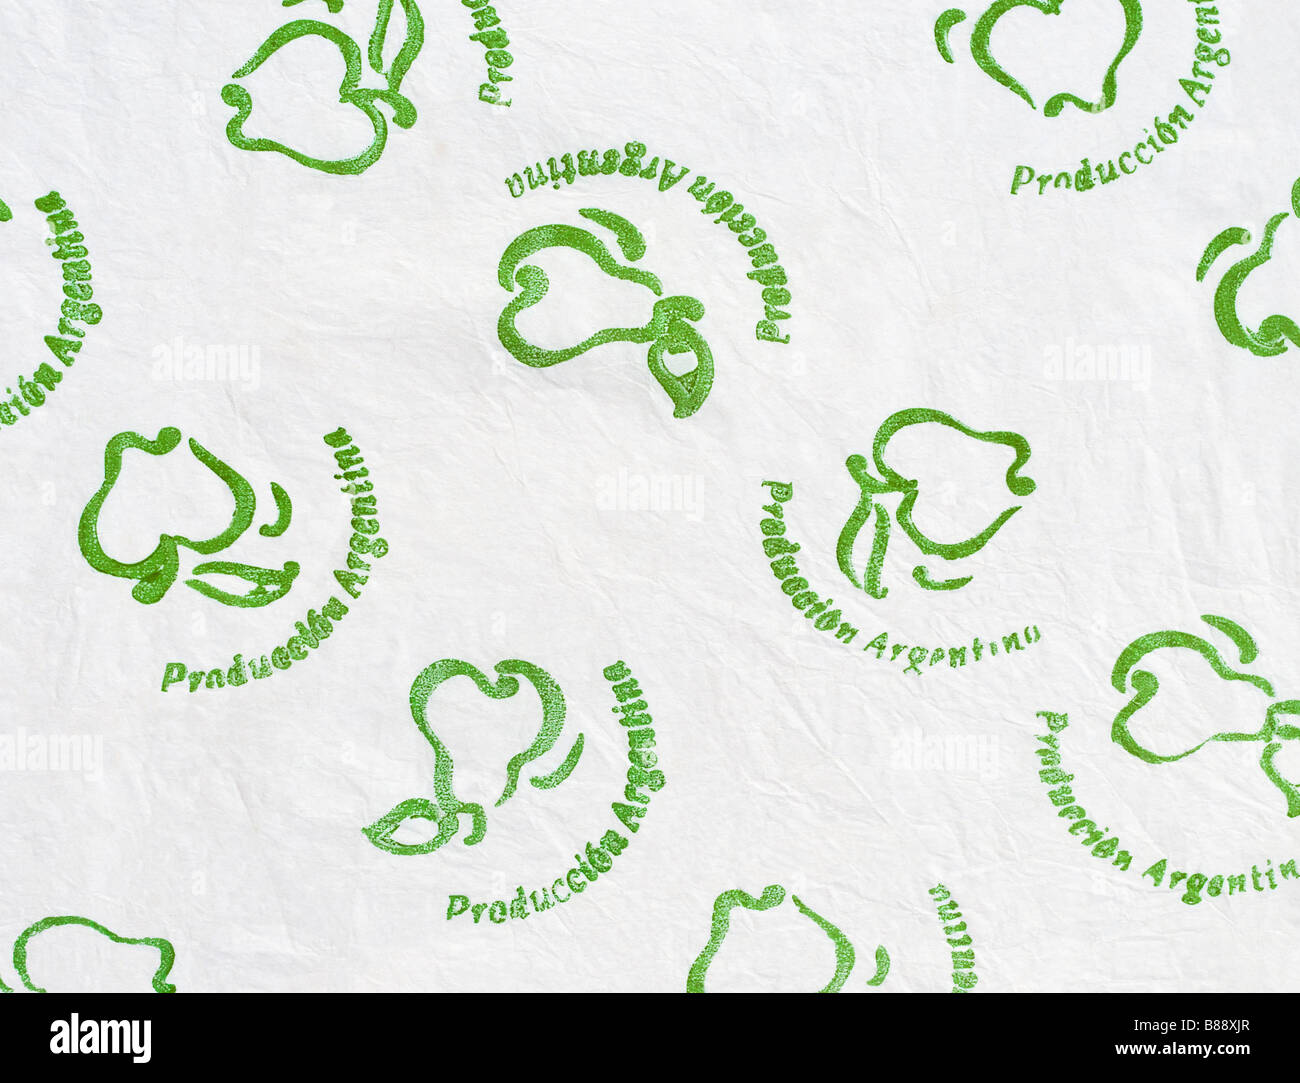 Fruit wrapper à partir de l'Argentine - illustration logo sur du papier absorbant. Banque D'Images